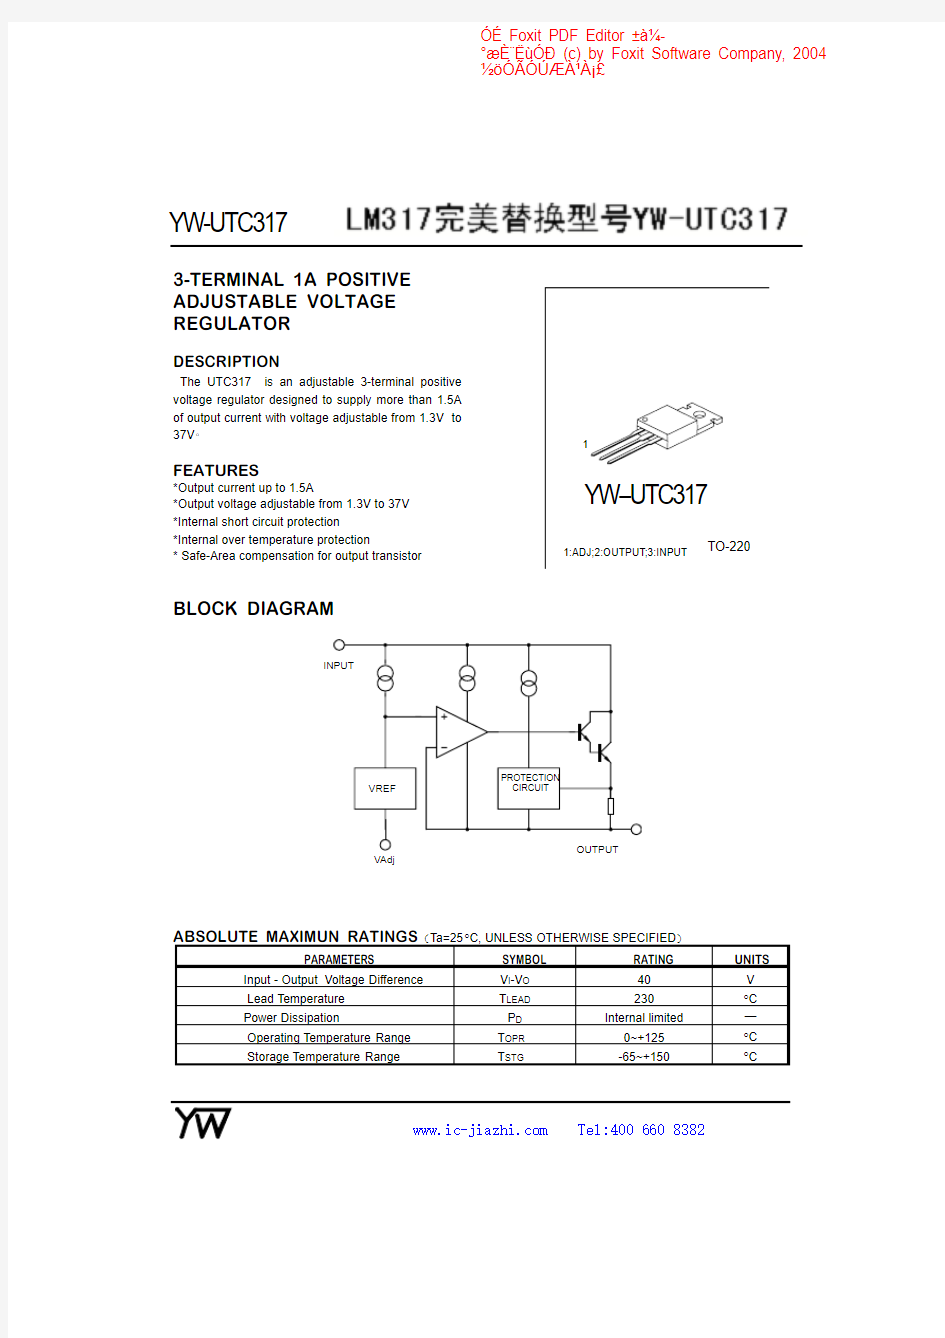 LM317中文资料PDF及电路图